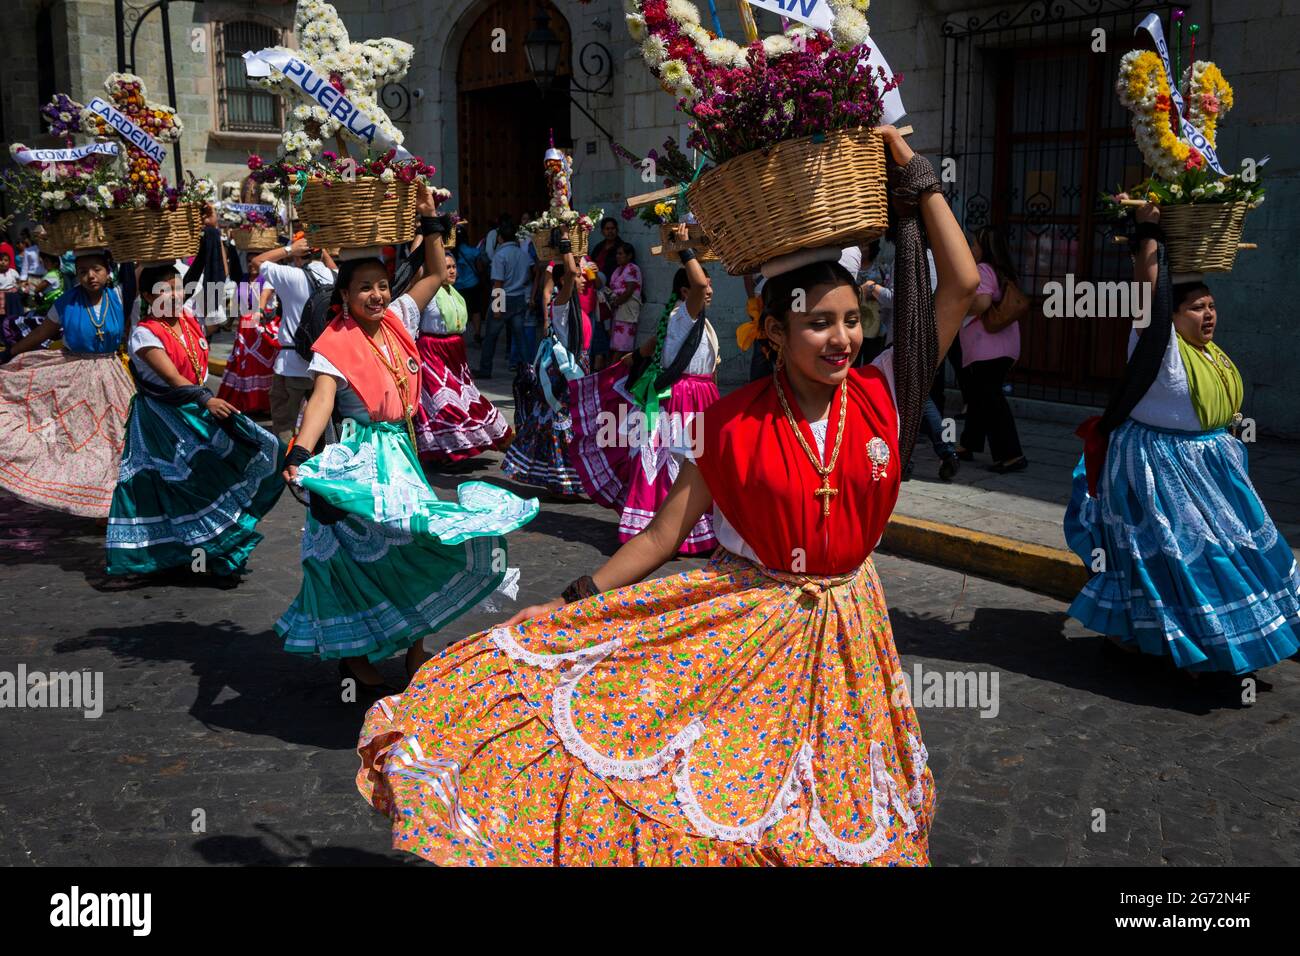 Oaxaca de Juarez, Mexiko - 15. Mai 2014: Eine Gruppe von Frauen in traditionellen bunten Kleidern und Körben mit Blumen, die auf einer Straße tanzen Stockfoto